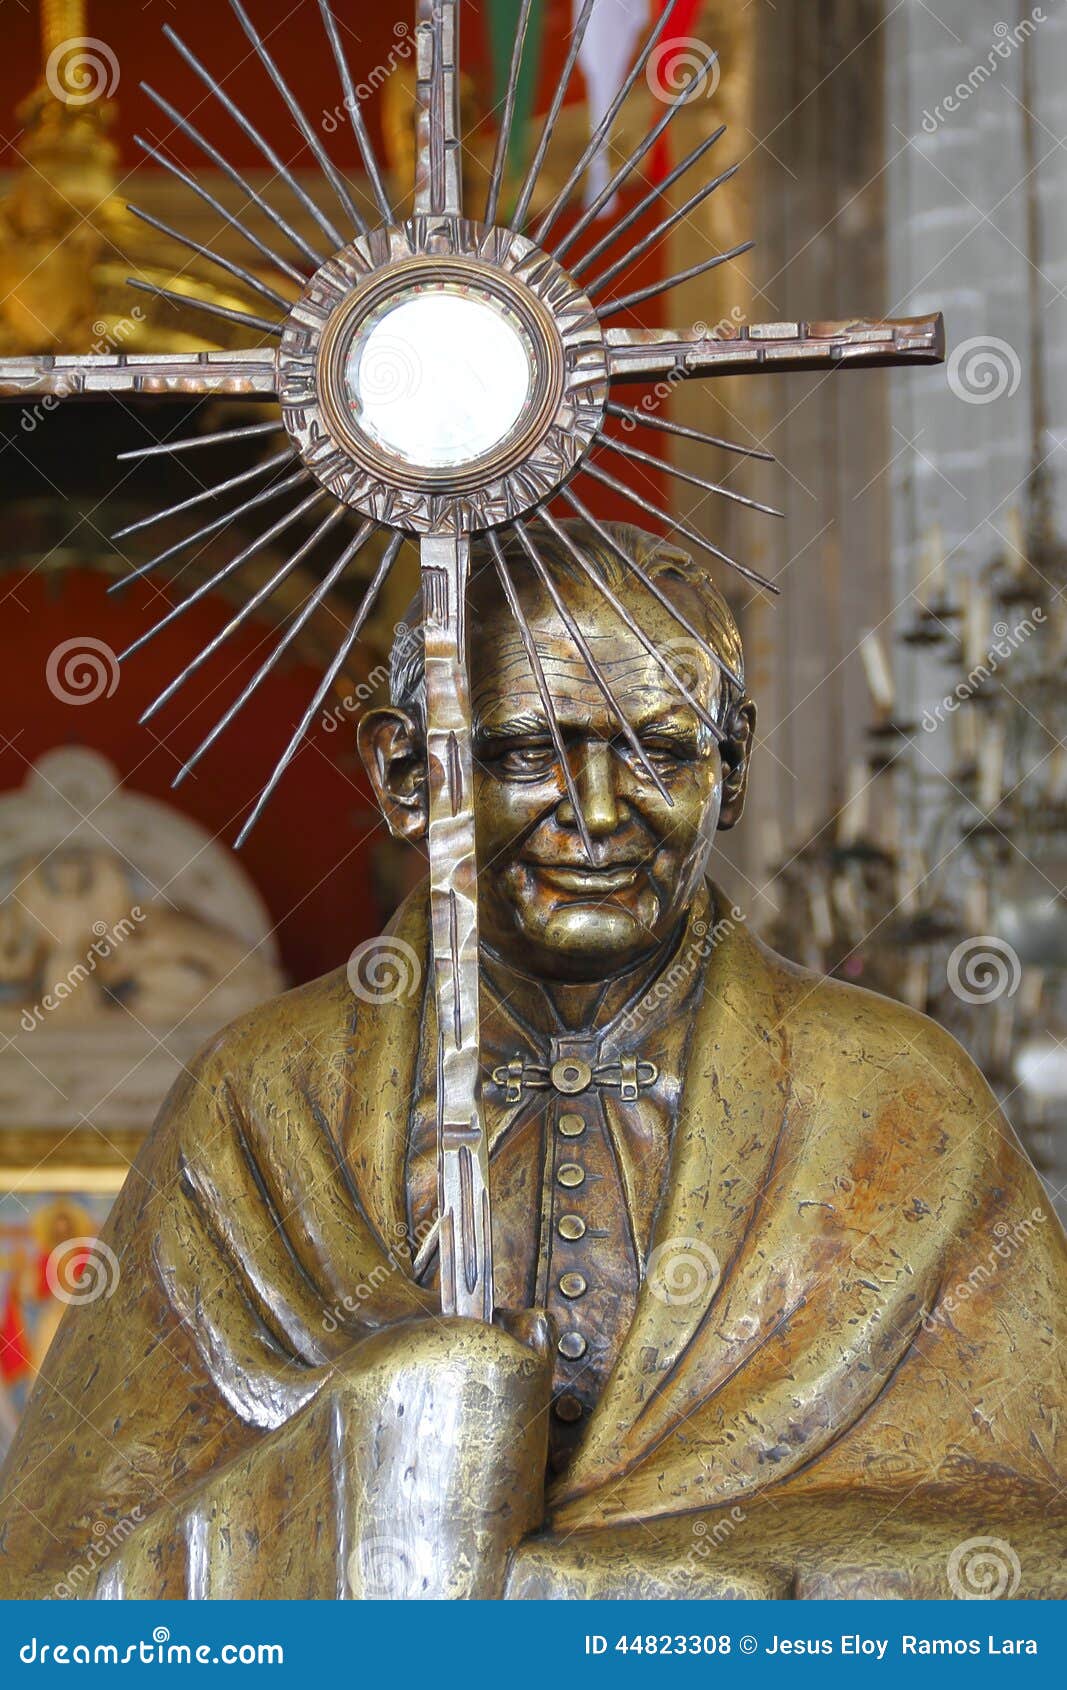 pope john paul ii statue in villa de guadalupe mexico city